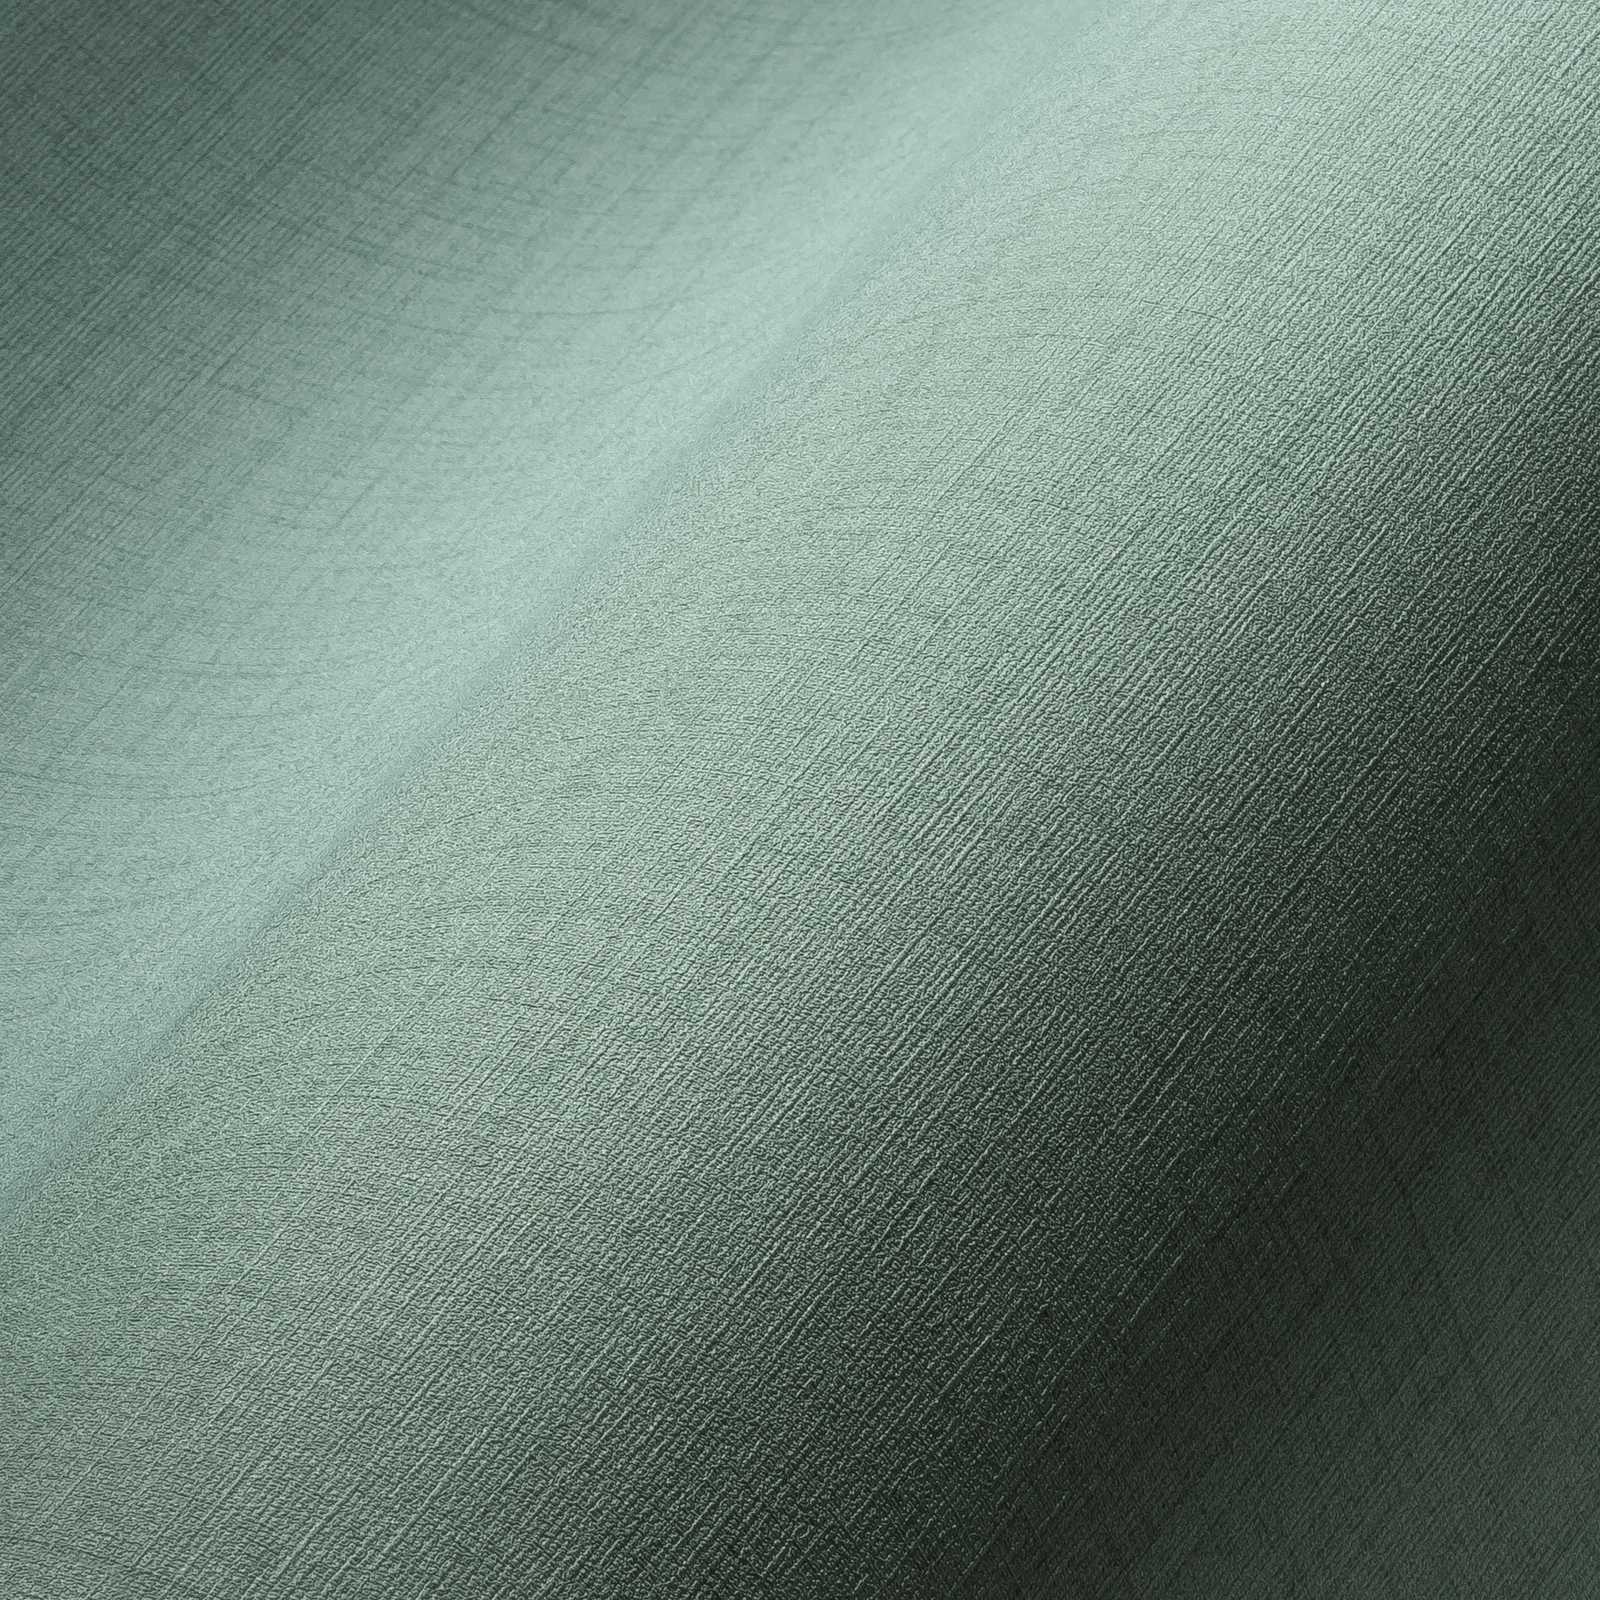             Behang saliegroen met linnen look & structuur effect - groen
        